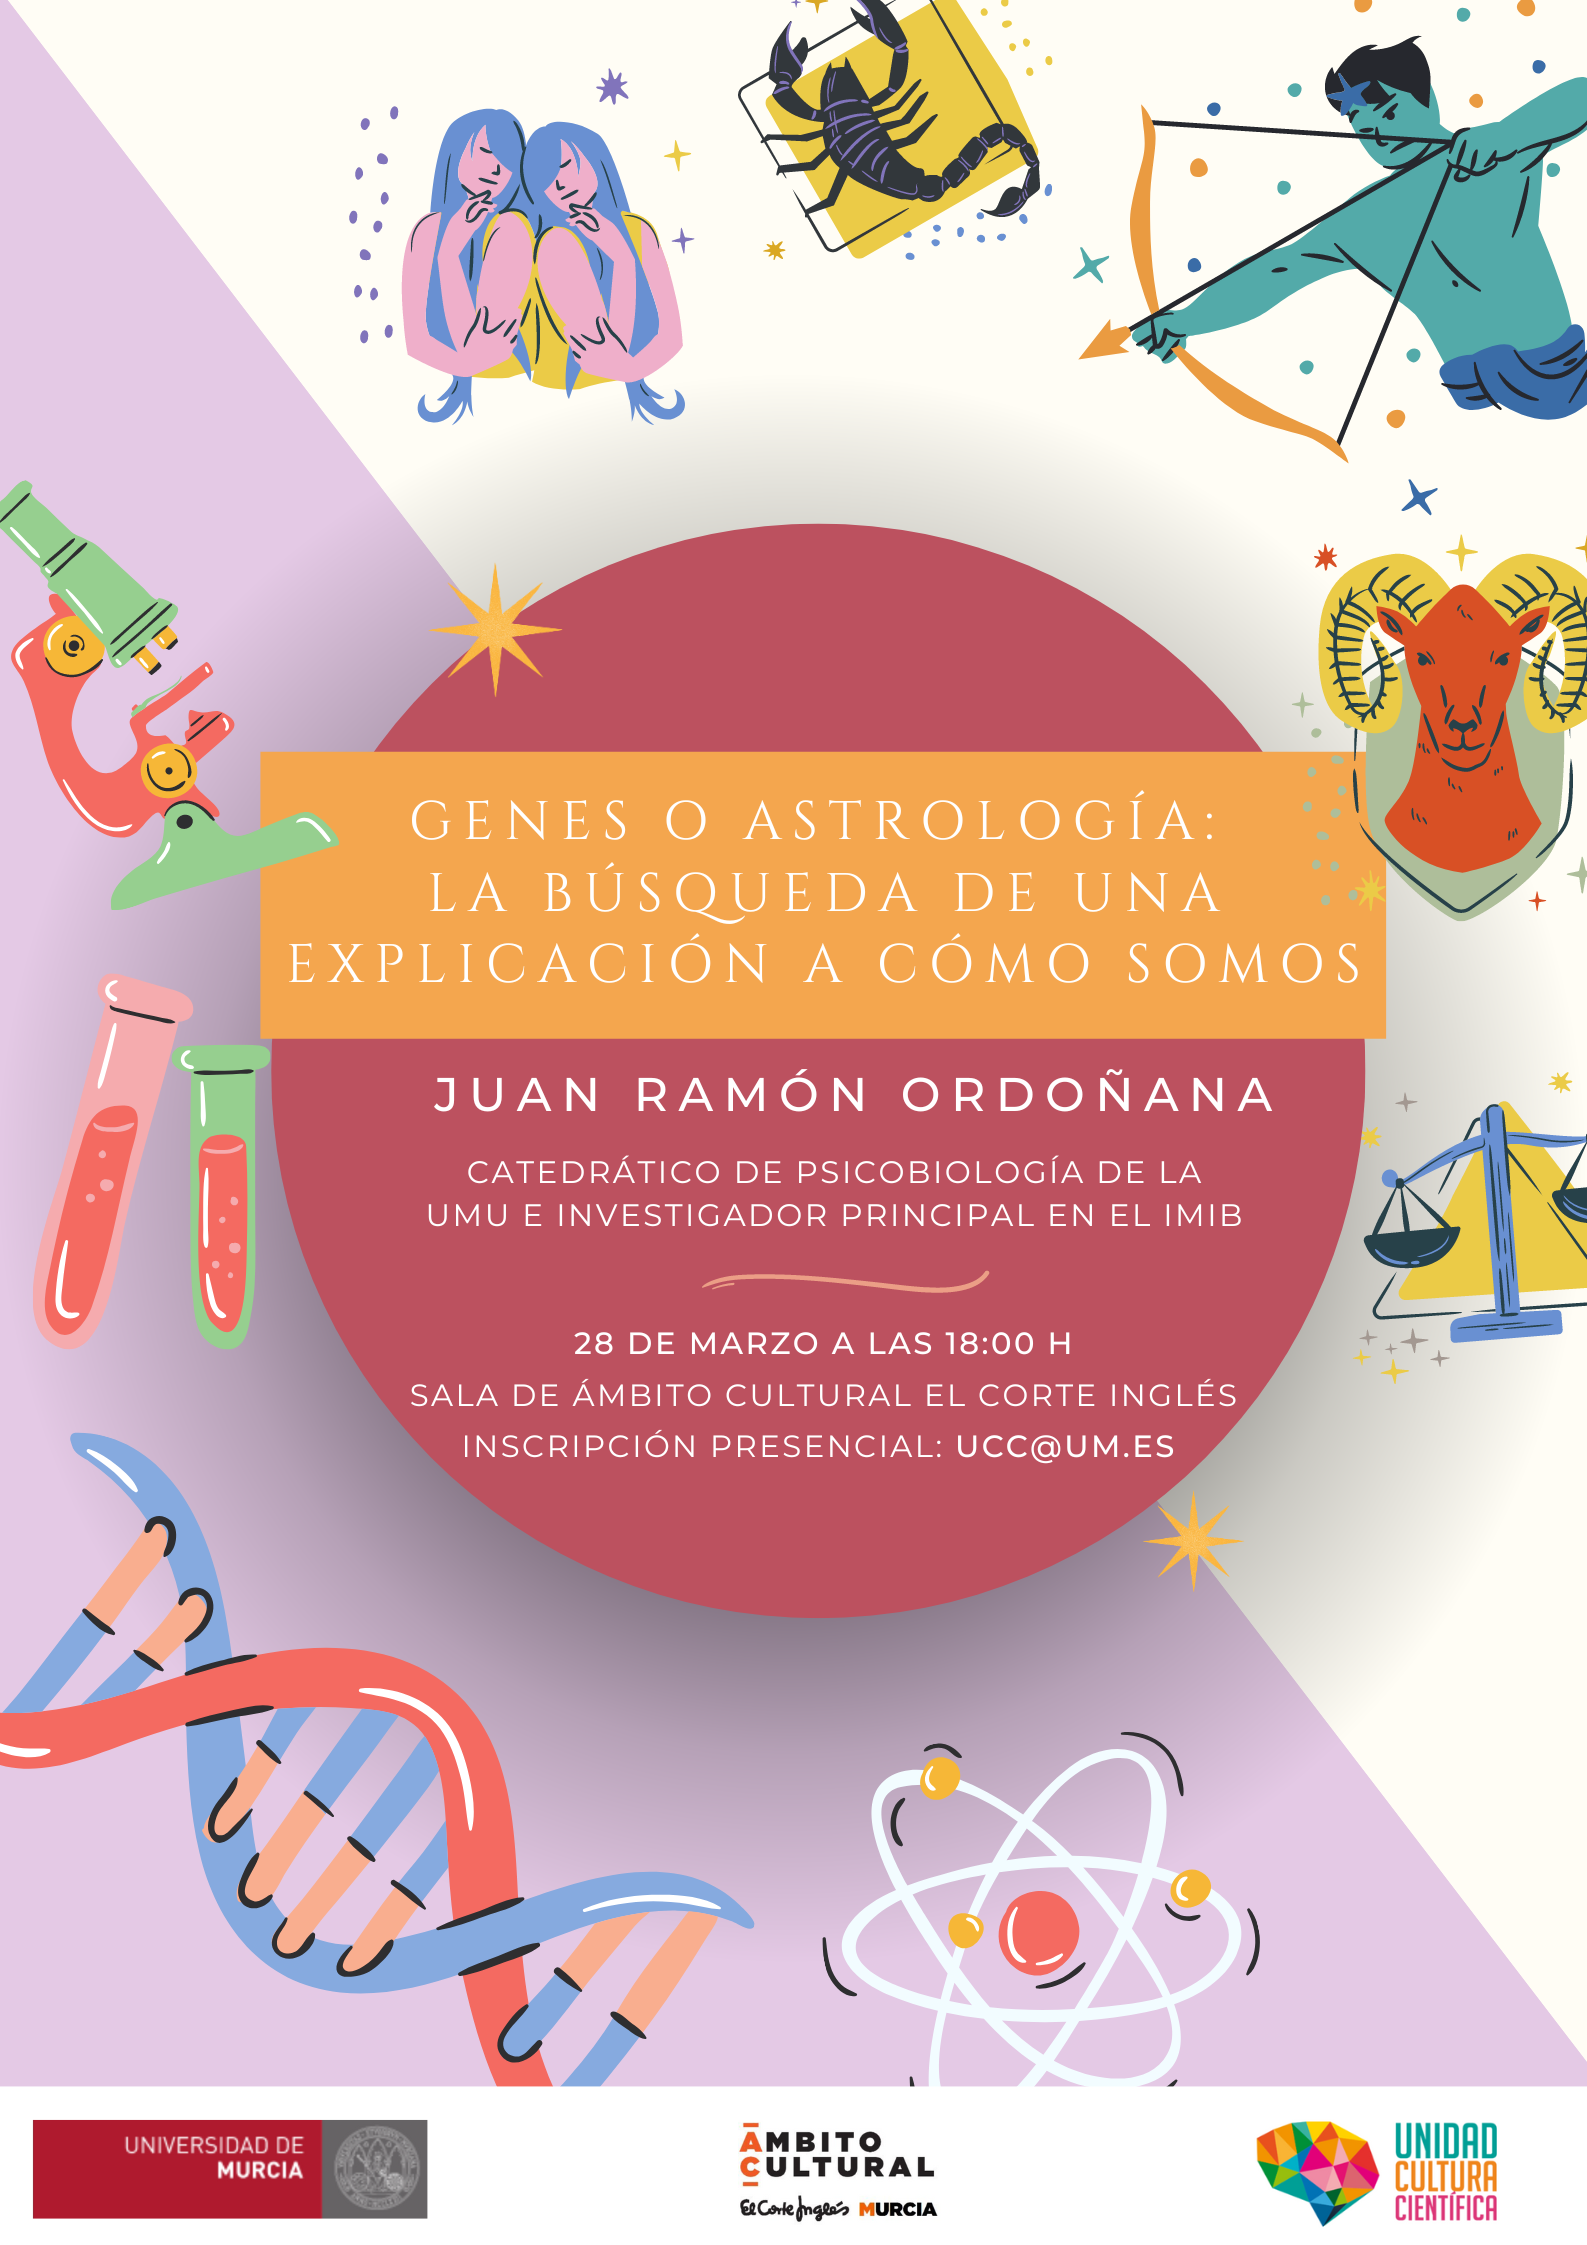  Juan Ramón Ordoñana